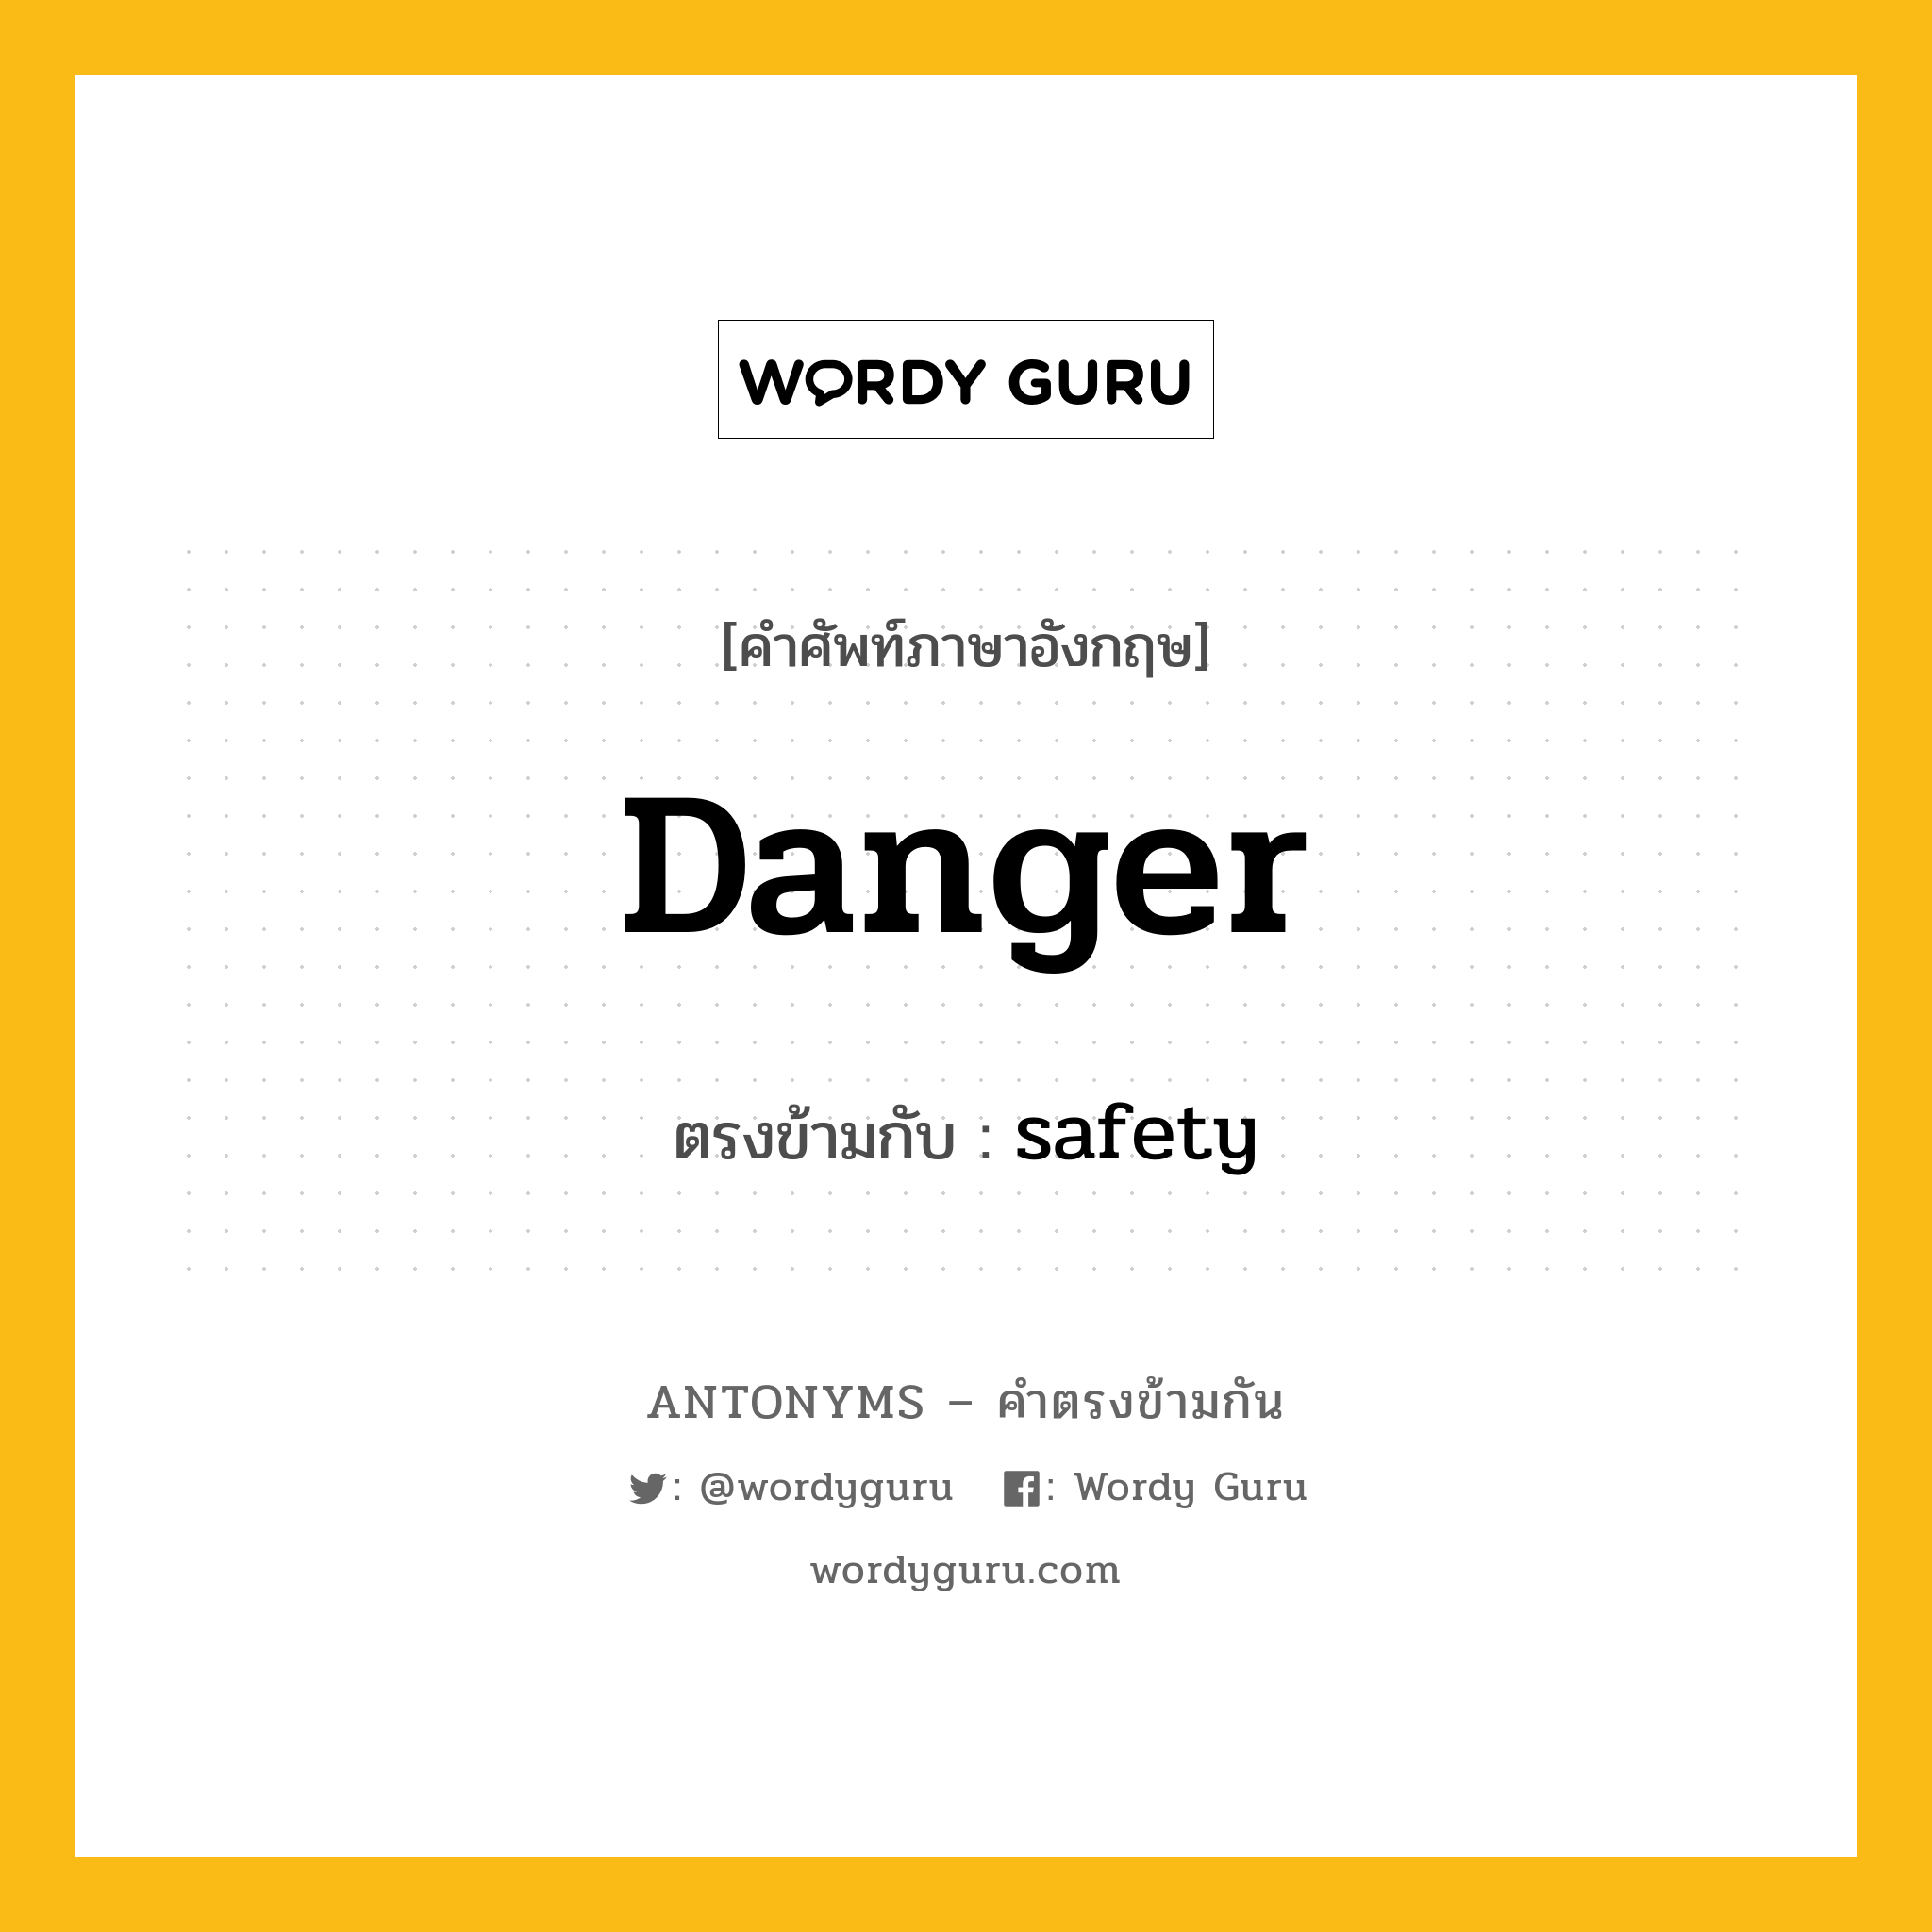 danger เป็นคำตรงข้ามกับคำไหนบ้าง?, คำศัพท์ภาษาอังกฤษ danger ตรงข้ามกับ safety หมวด safety